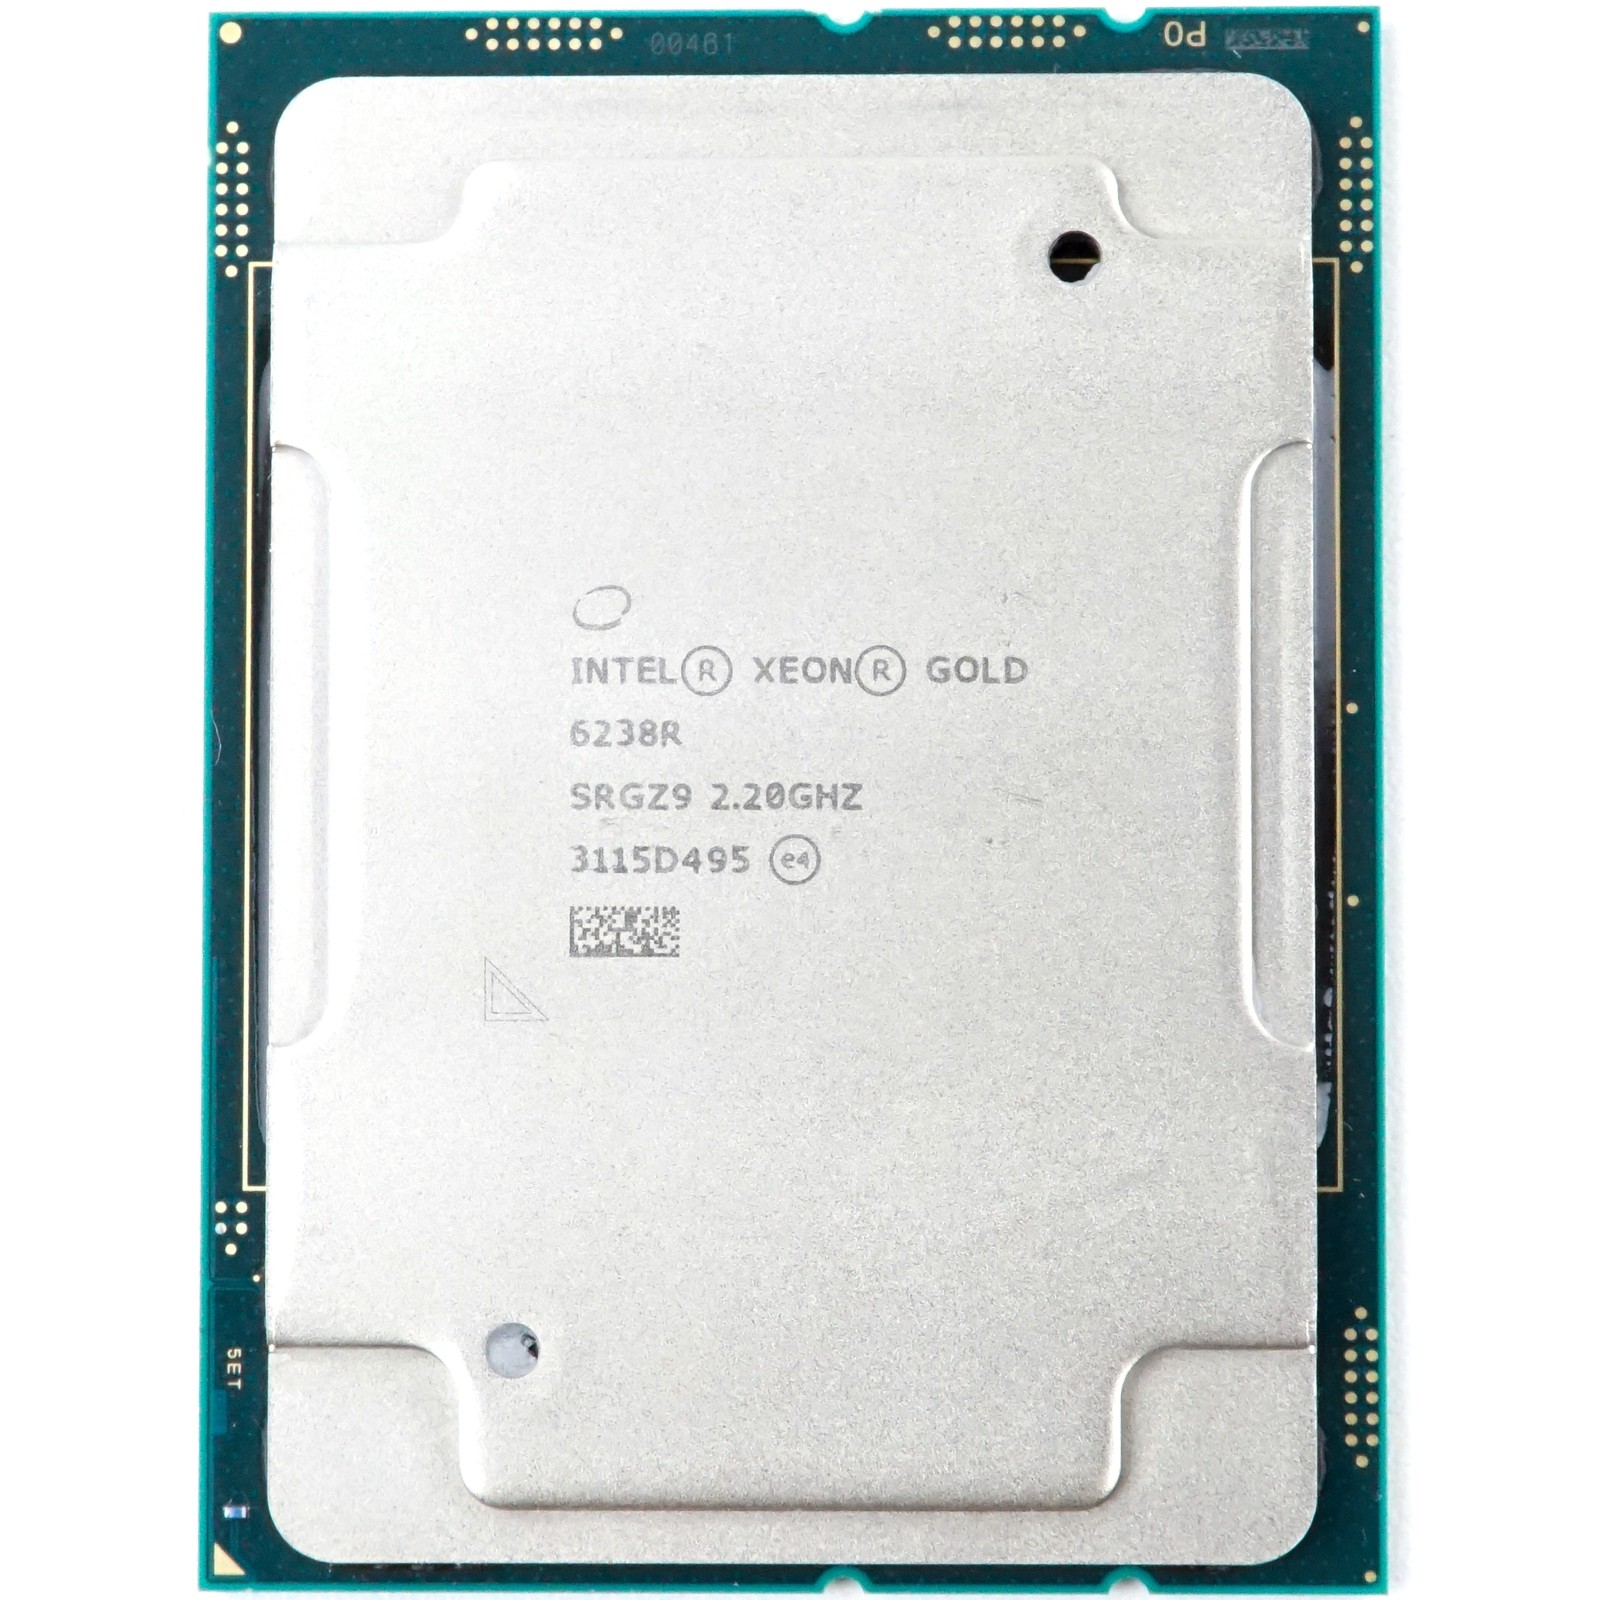 Intel Xeon Gold 6238R (SRGZ9) - 28-Core 2.20GHz LGA3647 38.5MB 165W CPU